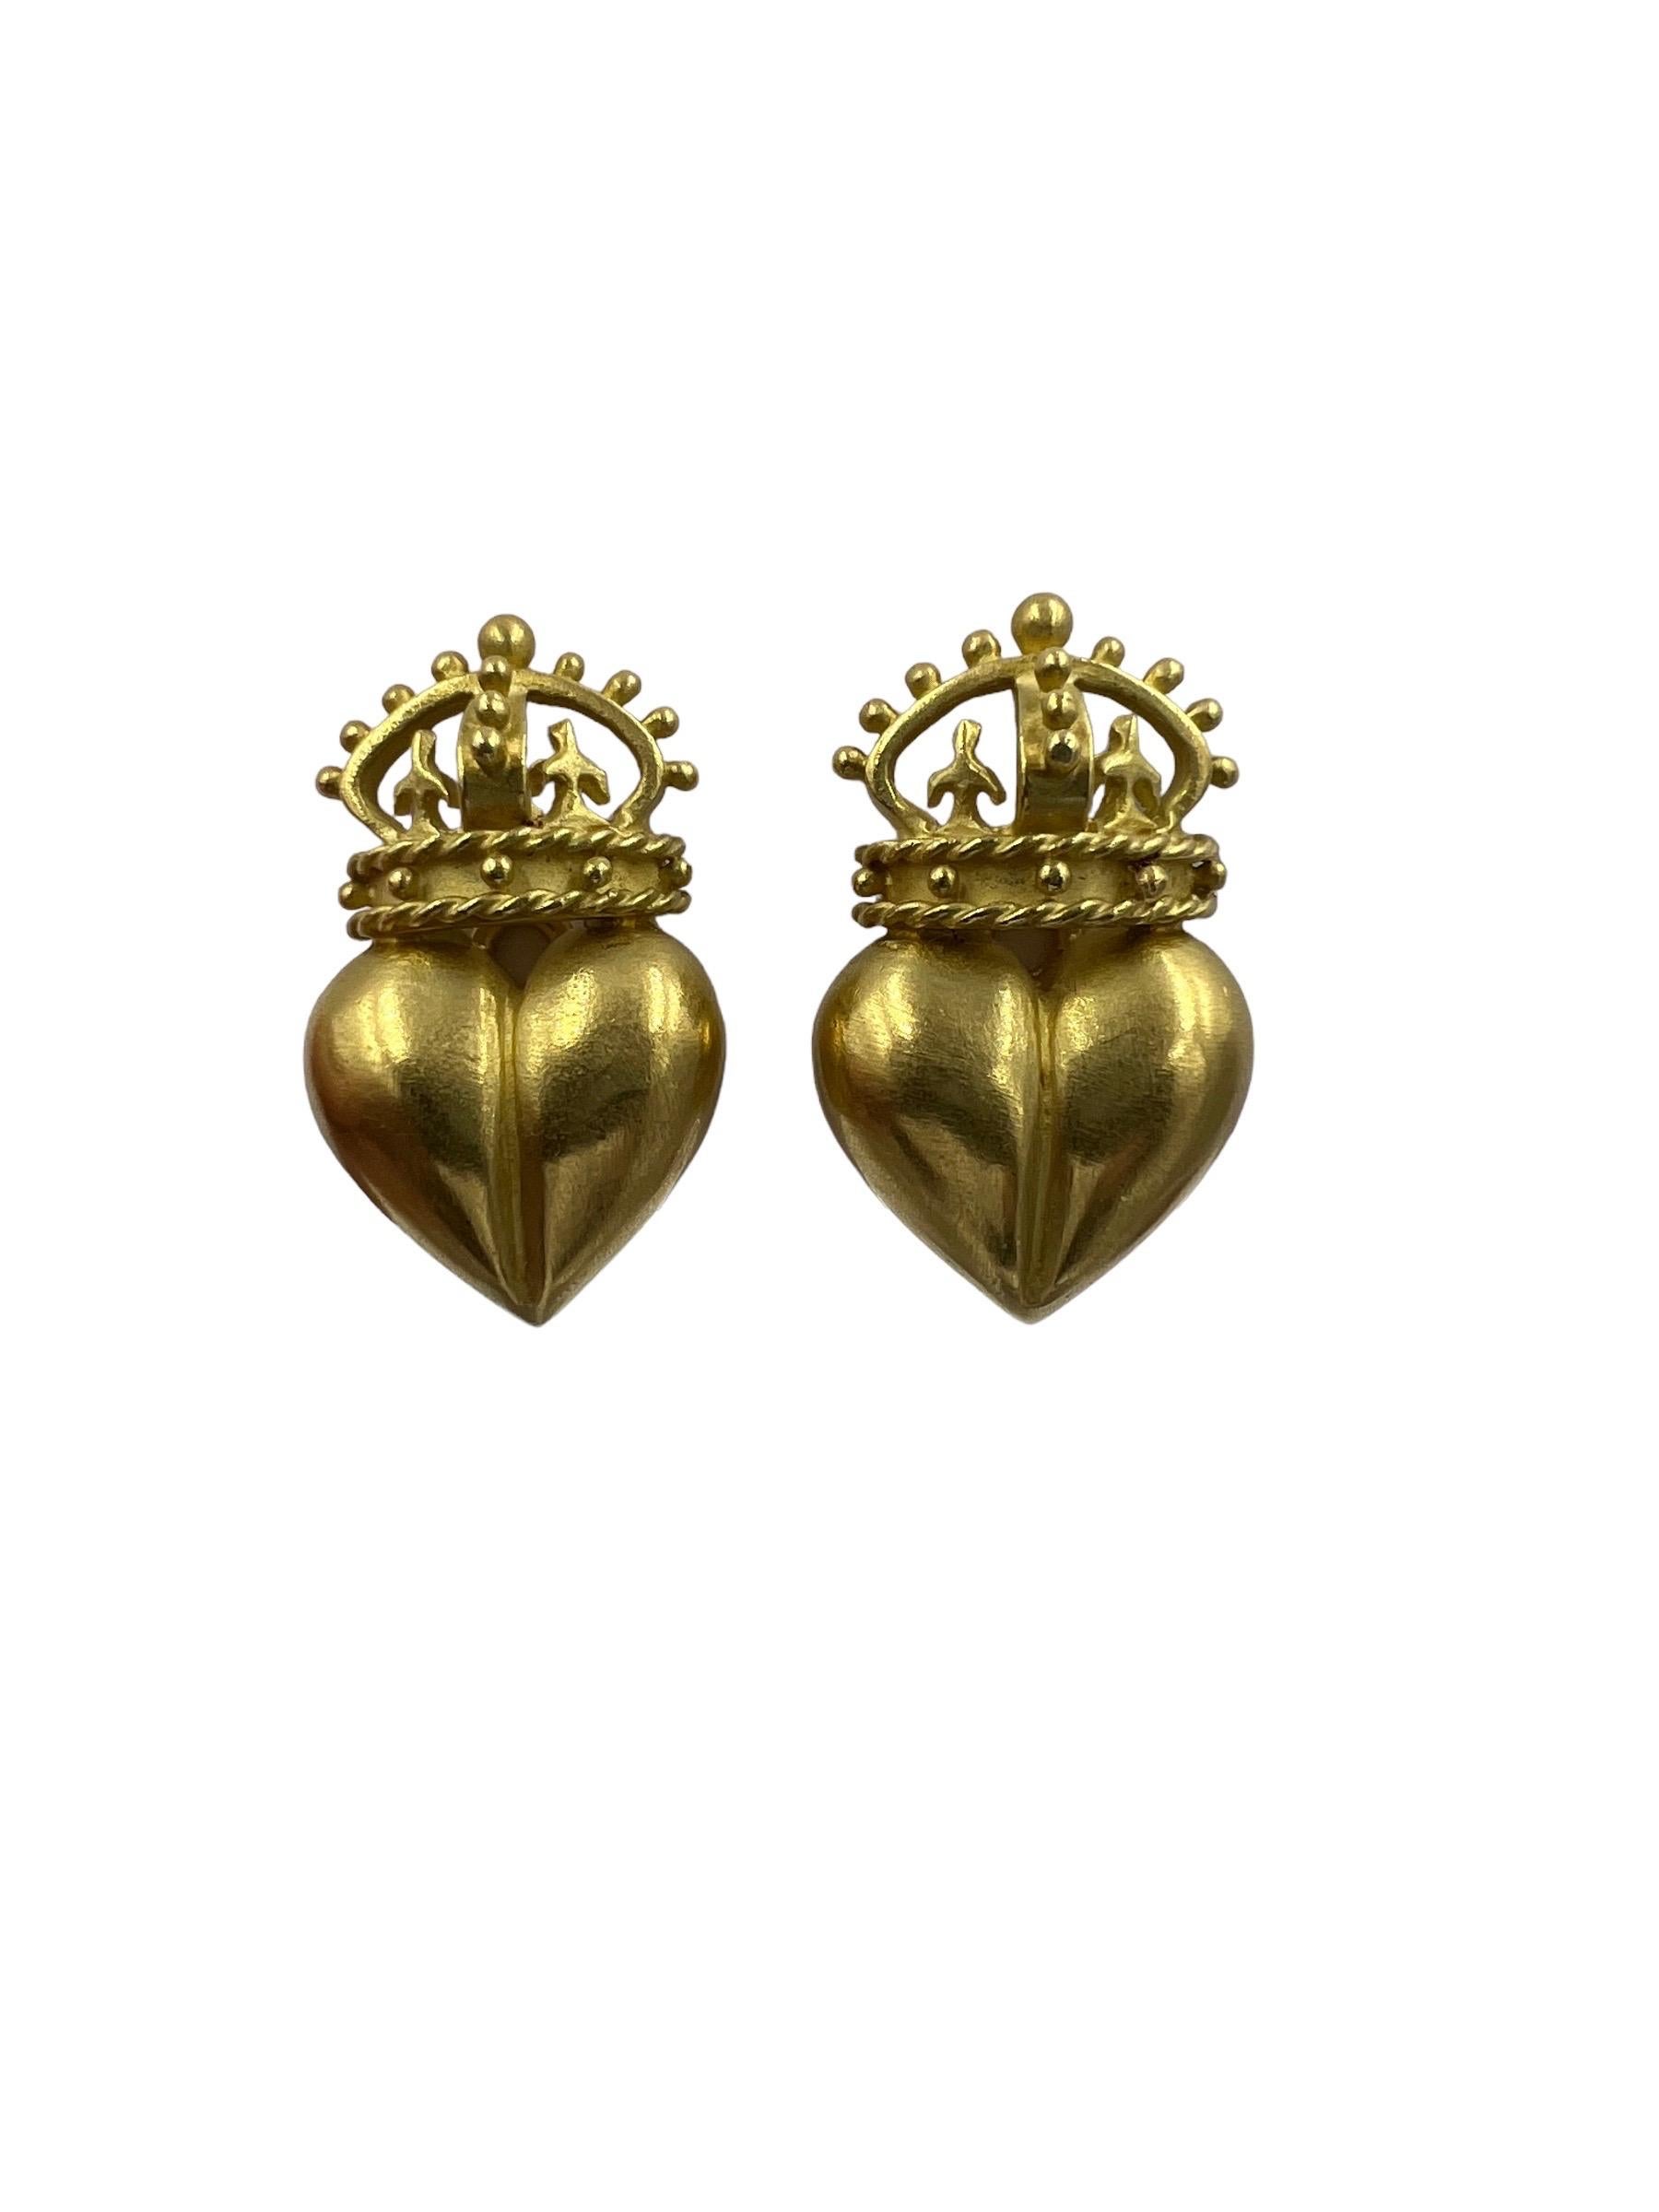 Ohrringe mit Krone und Herz aus 18 Karat Gelbgold, circa 1990er Jahre.

ÜBER DIESEN ARTIKEL:   E-DJ921B   Bezaubernde Ohrringe mit Krone und Herz zum Anstecken.  Ein alltäglicher Ohrring für einen raffinierten Look.
          Sehr